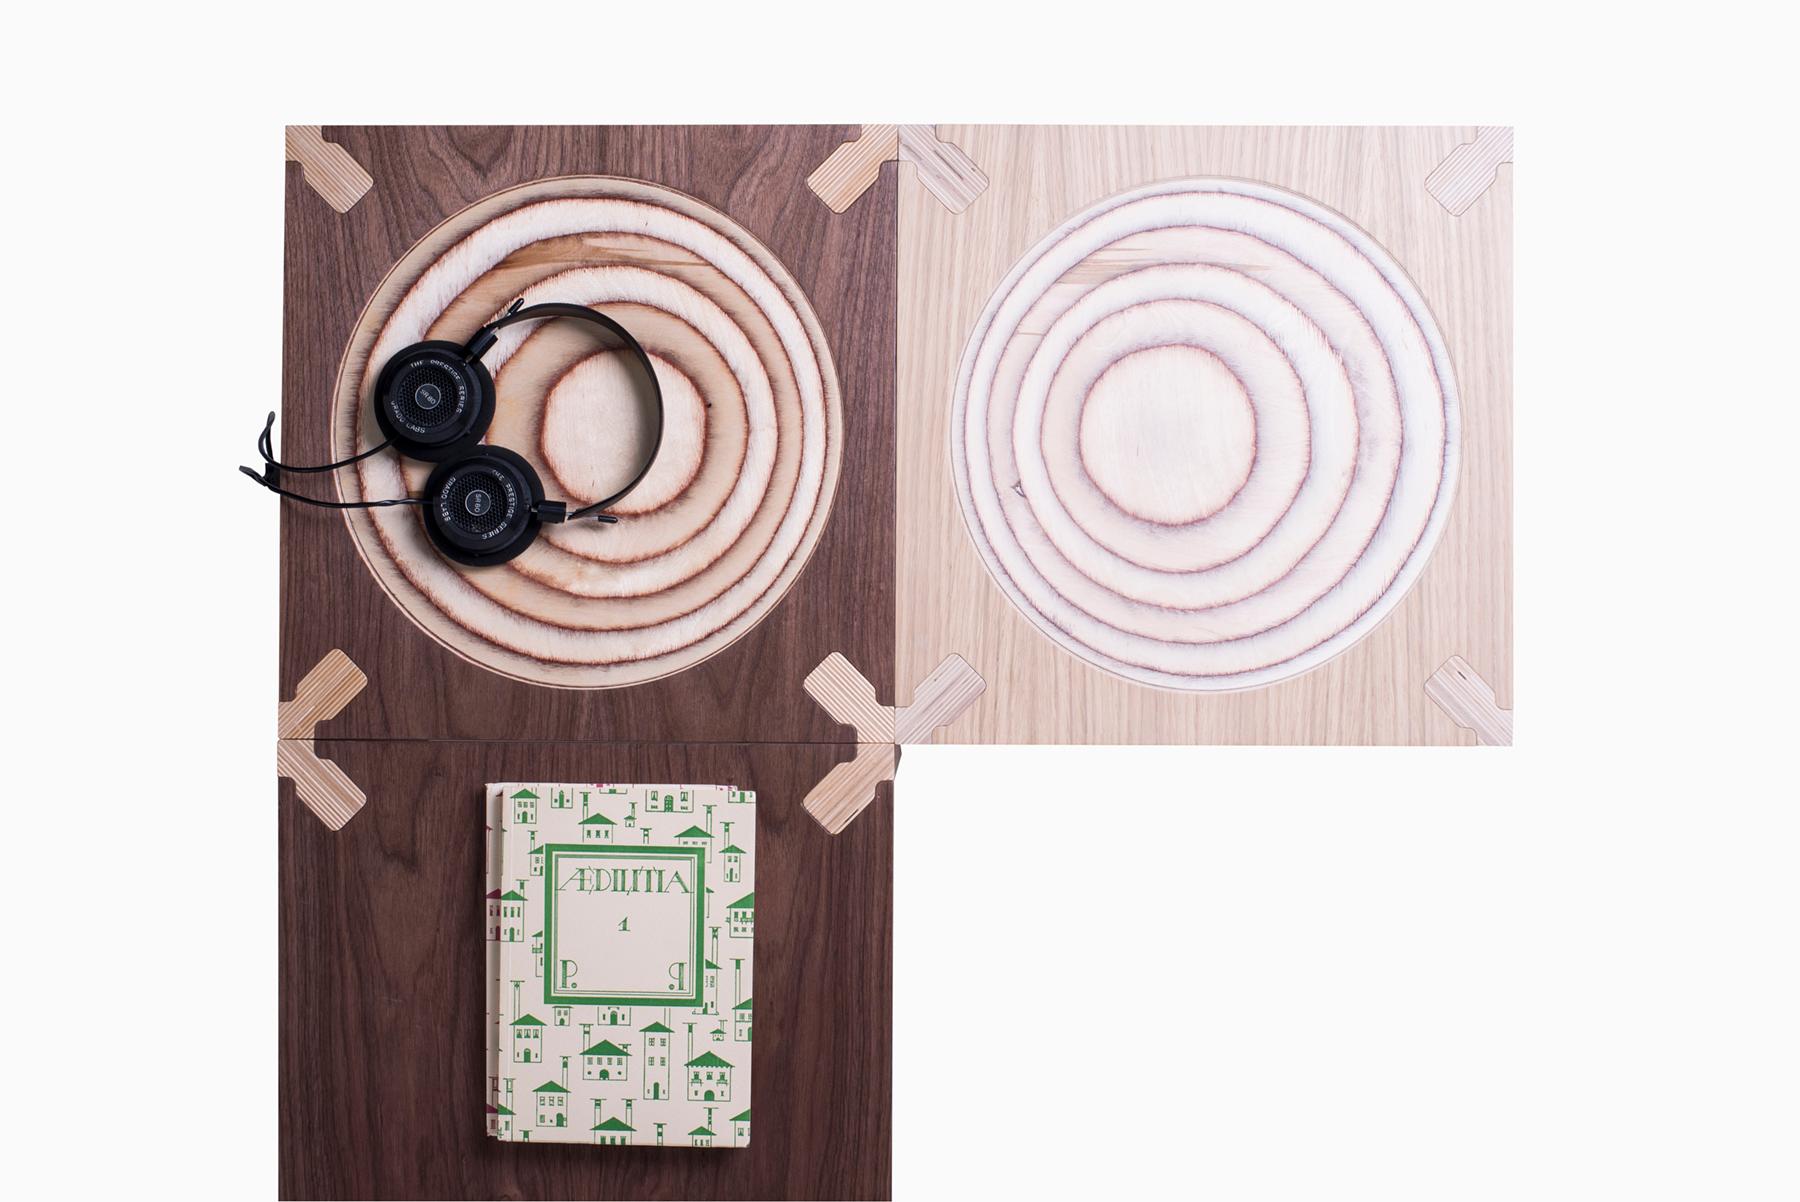 Dieser minimalistische, vielseitige Beistelltisch oder Hocker gehört zur MiMi-Serie und setzt Akzente in Haus und Büro. Die klare, facettierte Geometrie und die lackierten Oberflächen verleihen ihm Tiefe und Raffinesse, während die Platte aus